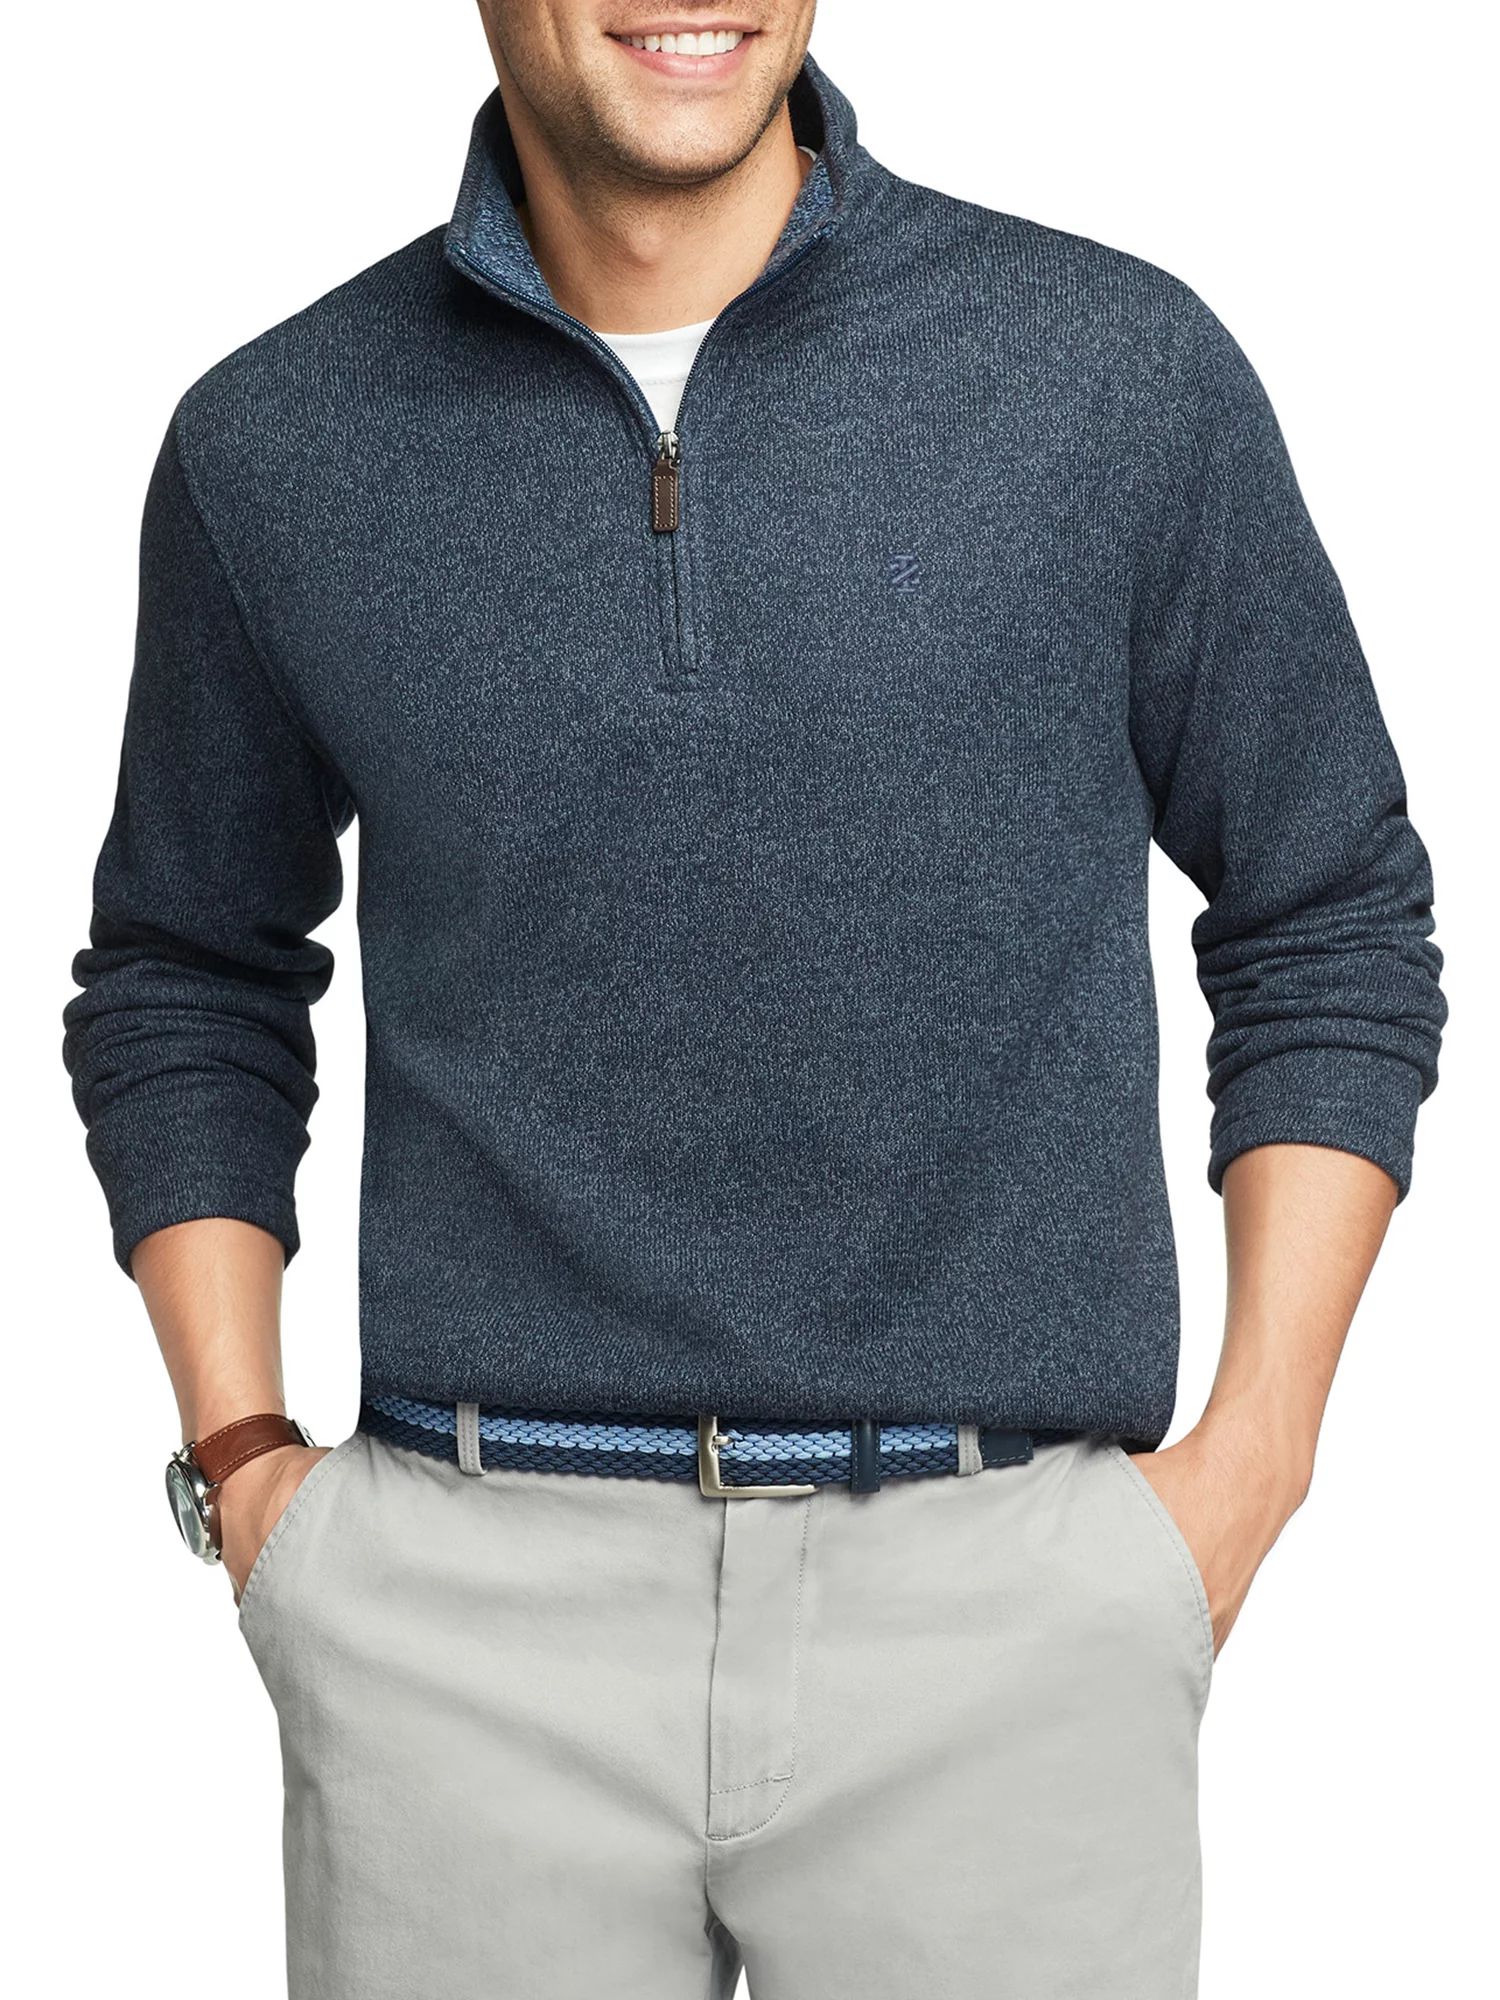 IZOD Men's Sweater Fleece Quarter Zip - Walmart.com | Walmart (US)